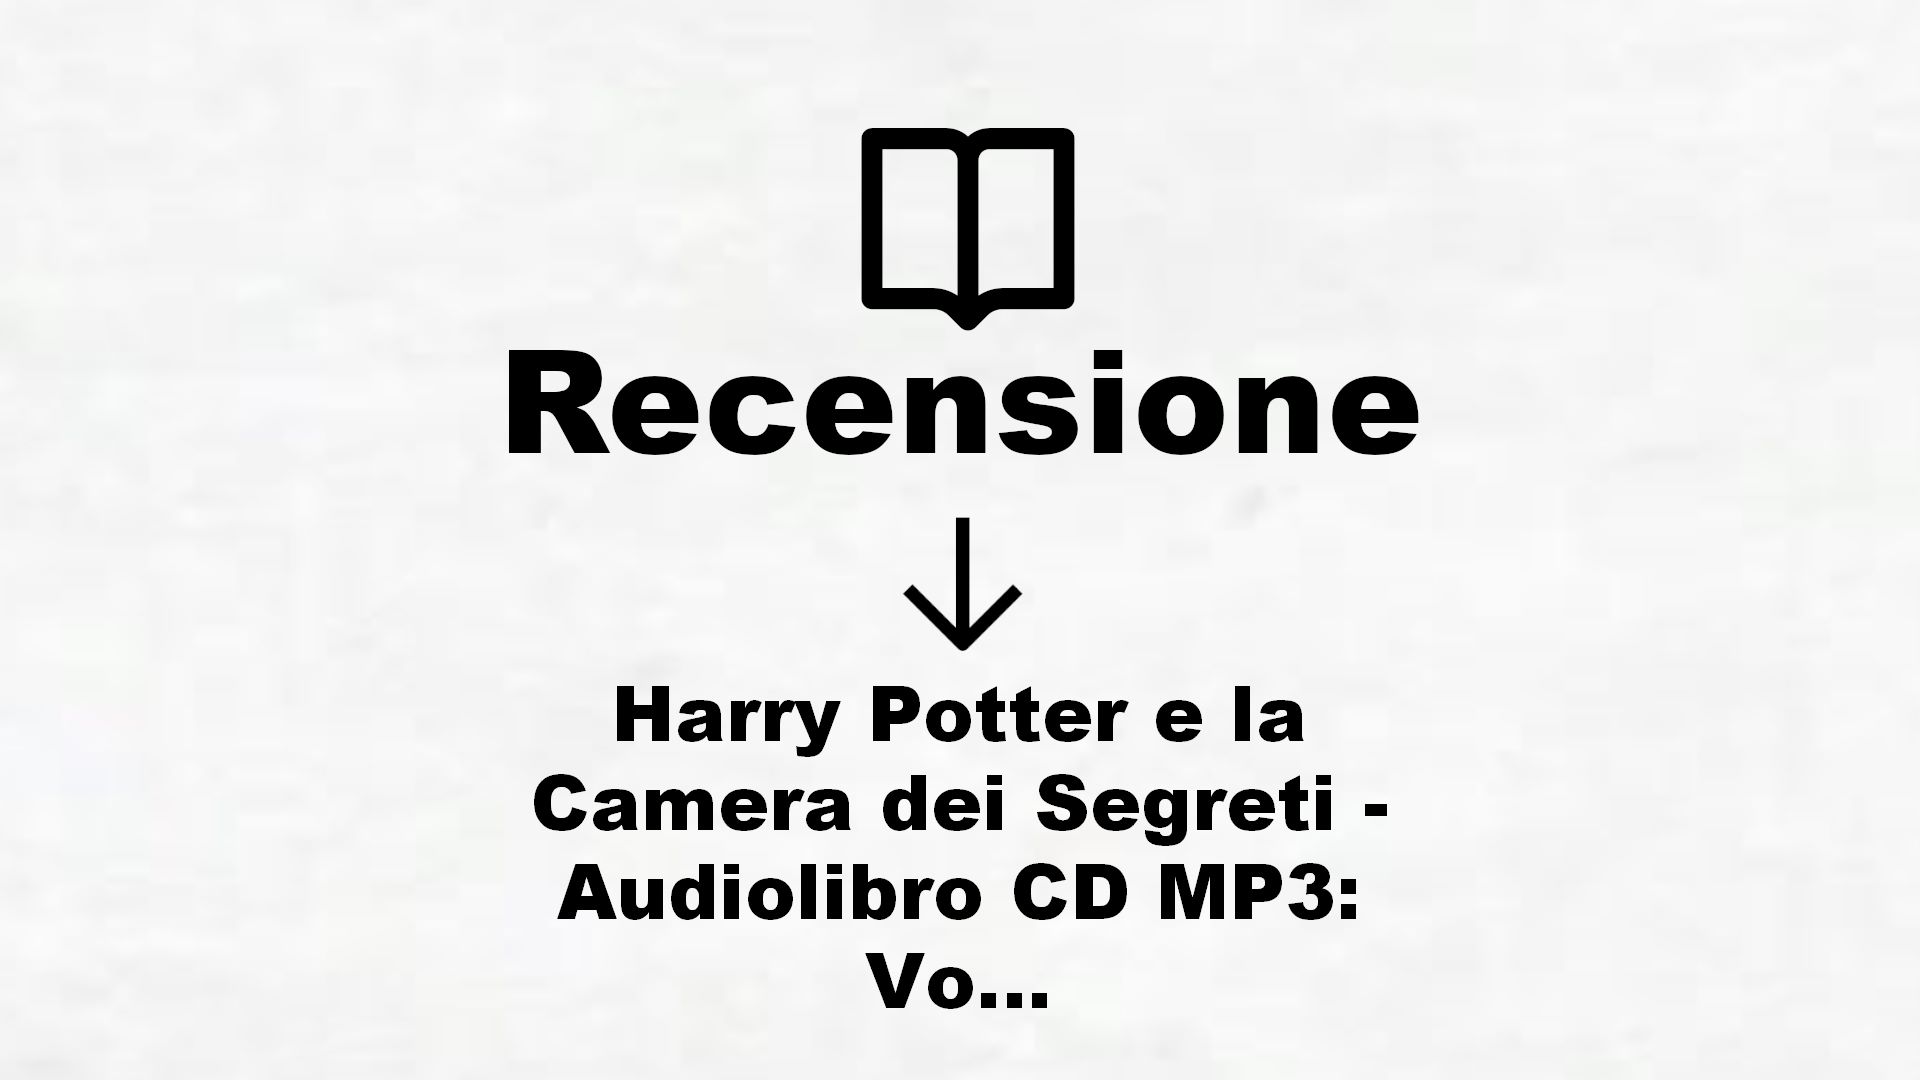 Harry Potter e la Camera dei Segreti – Audiolibro CD MP3: Vol. 2 – Recensione Libro